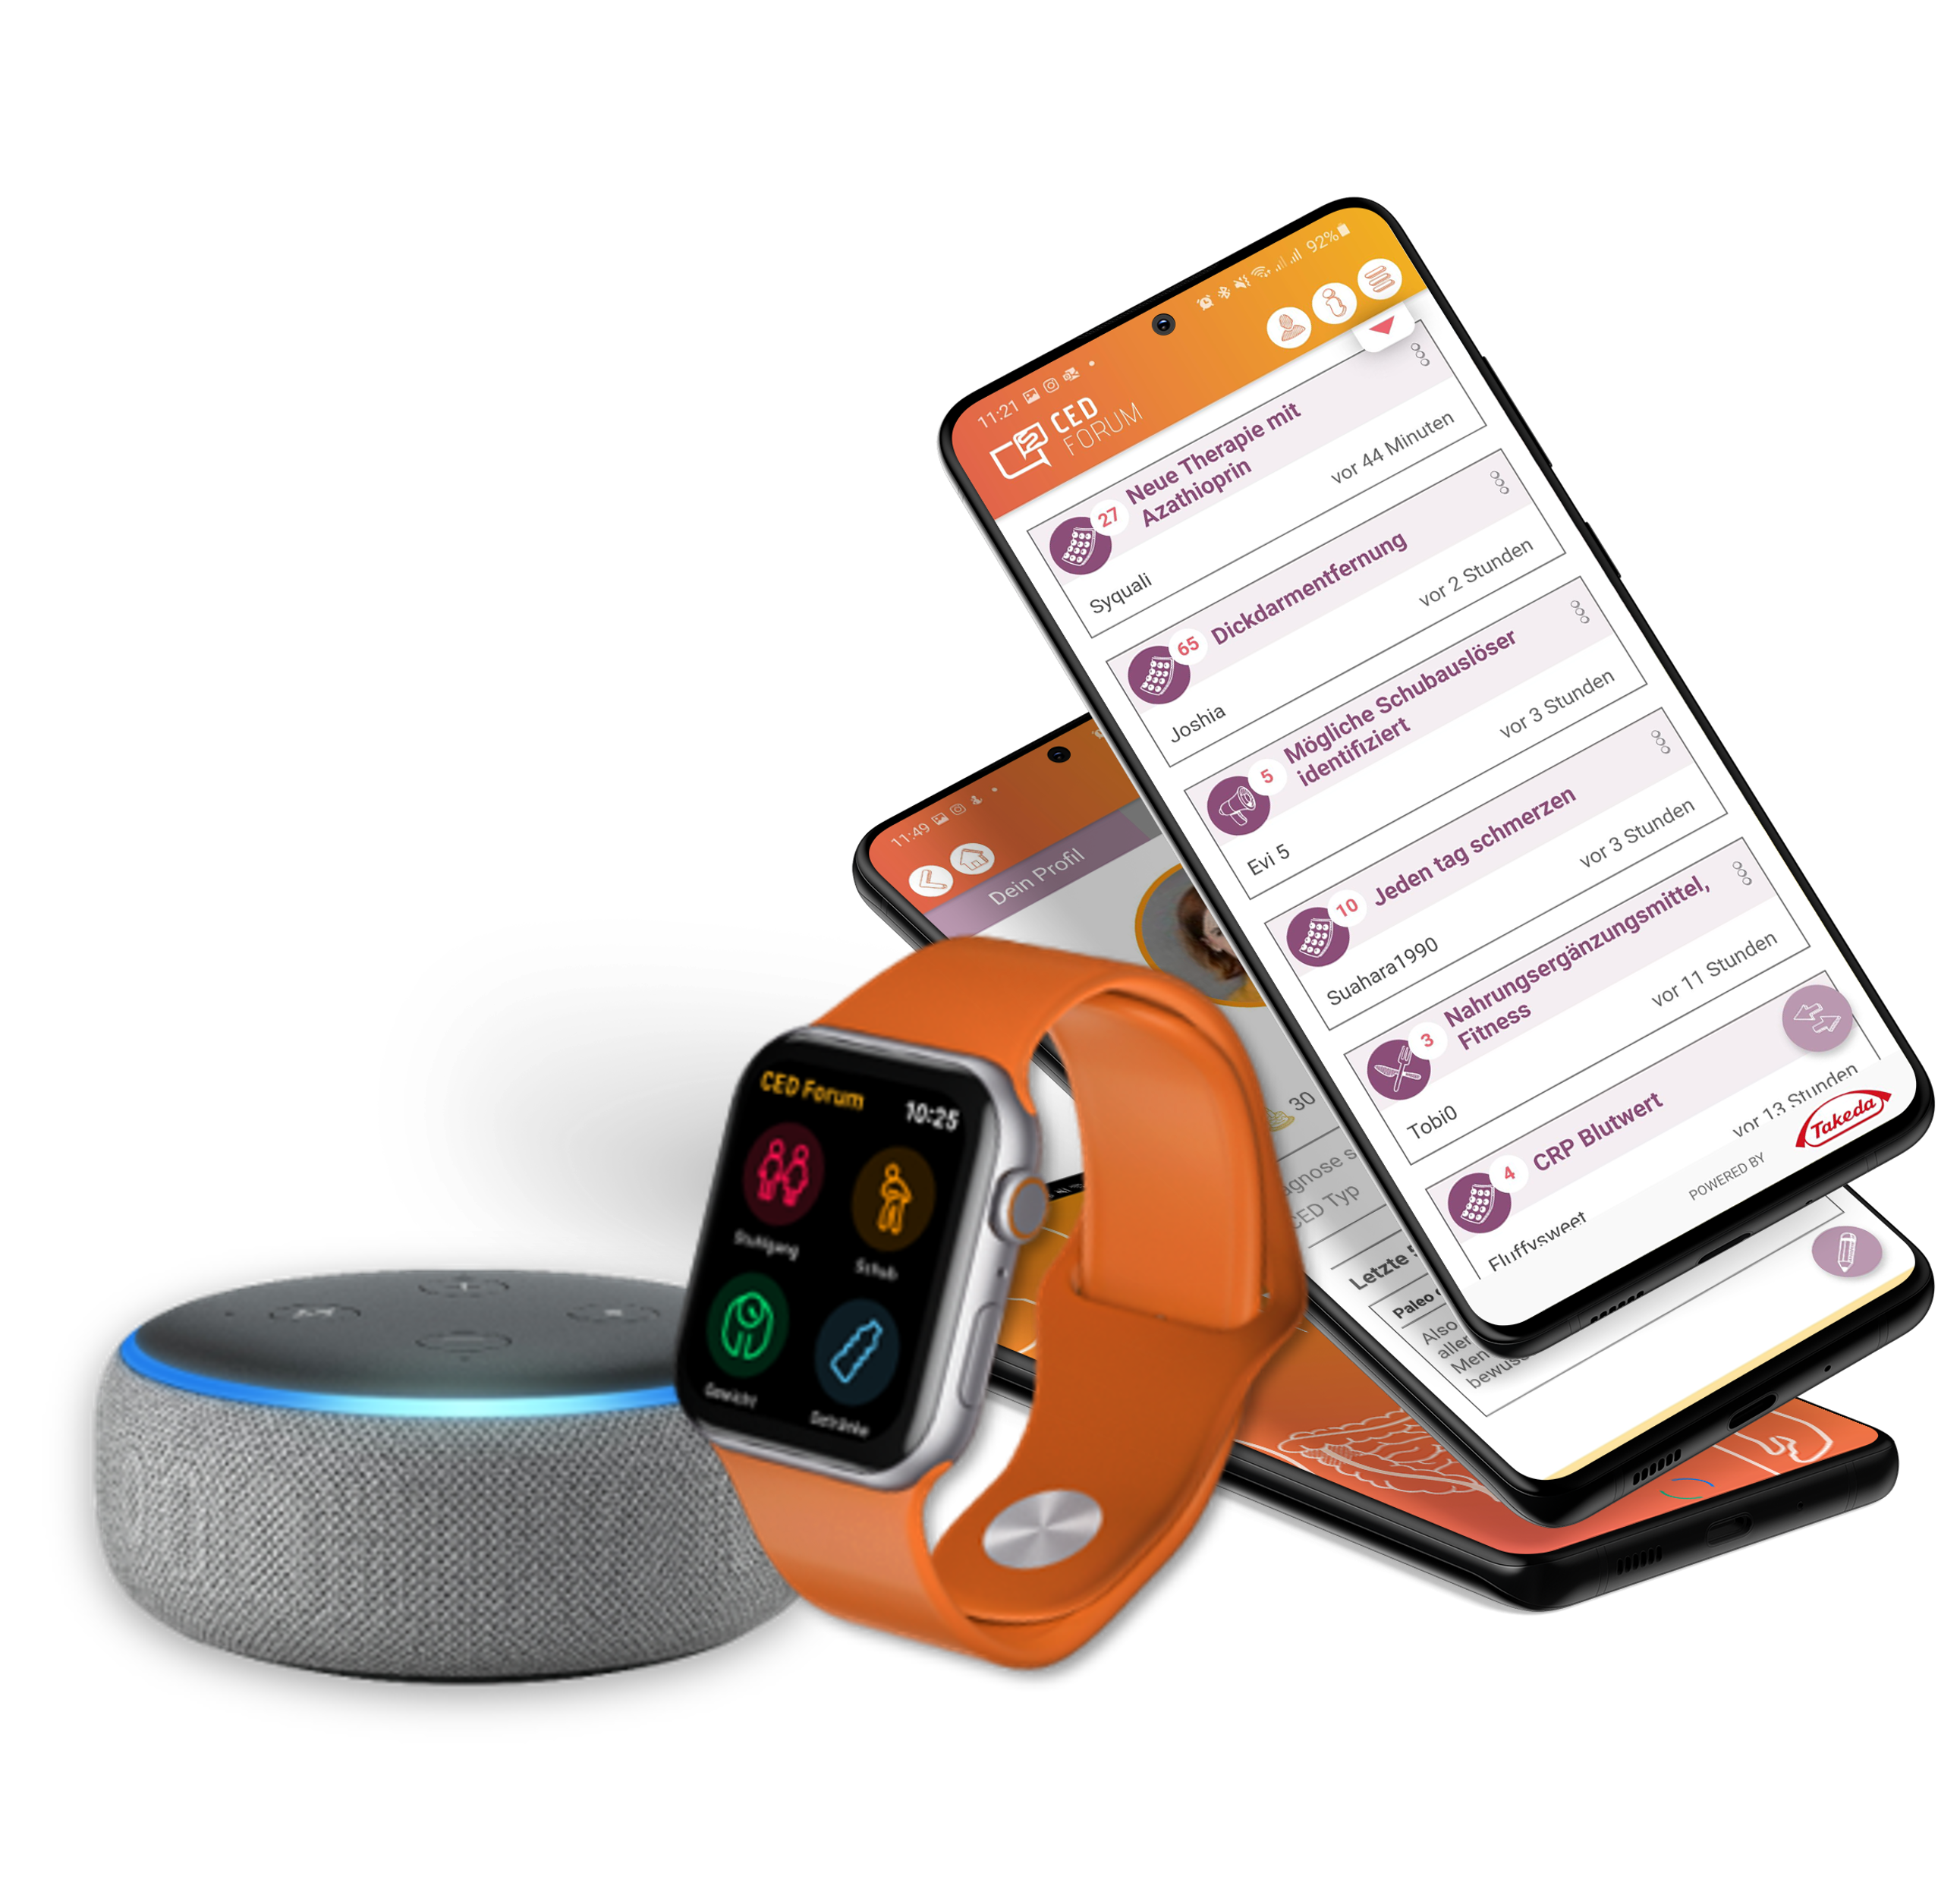 Darstellung der CED Forum App inklusive Smartwatch und Echo Dot